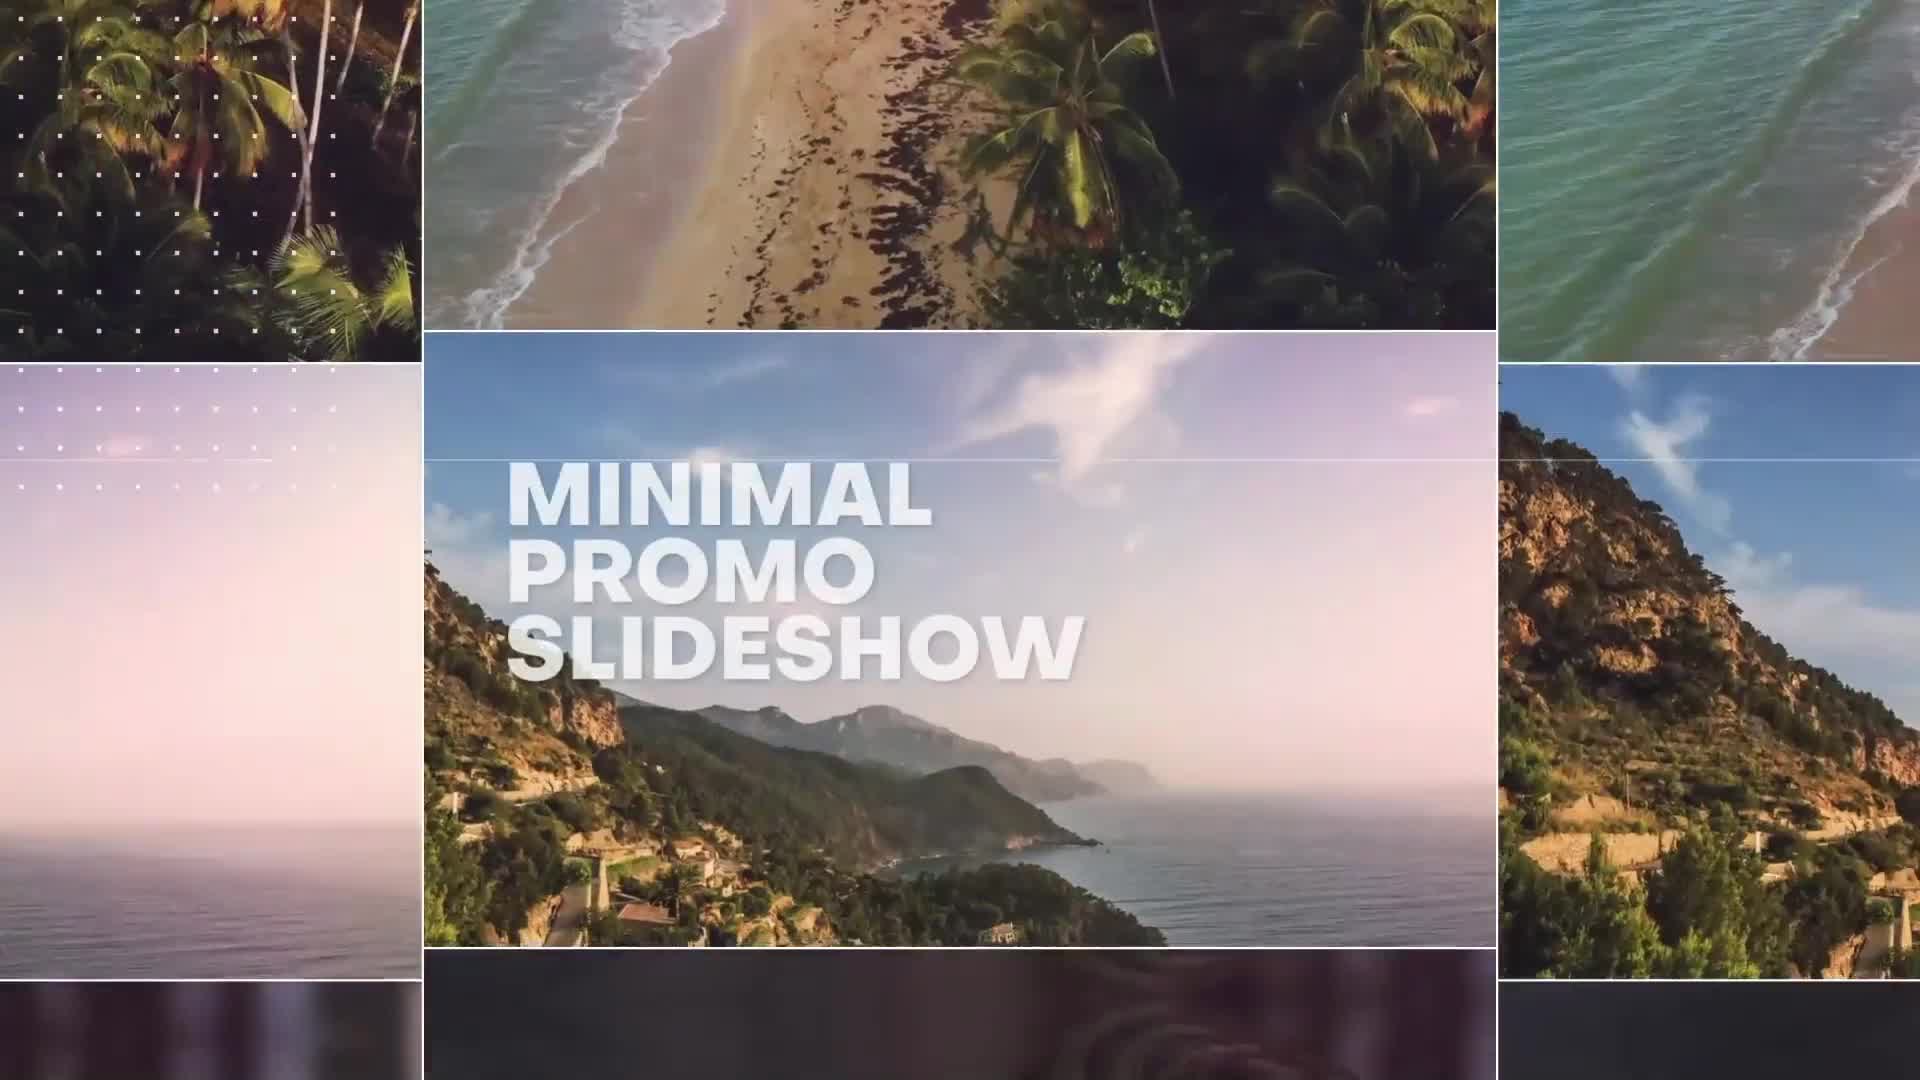 Minimal Promo Slideshow 4 | Premiere Pro Videohive 36469496 Premiere Pro Image 9